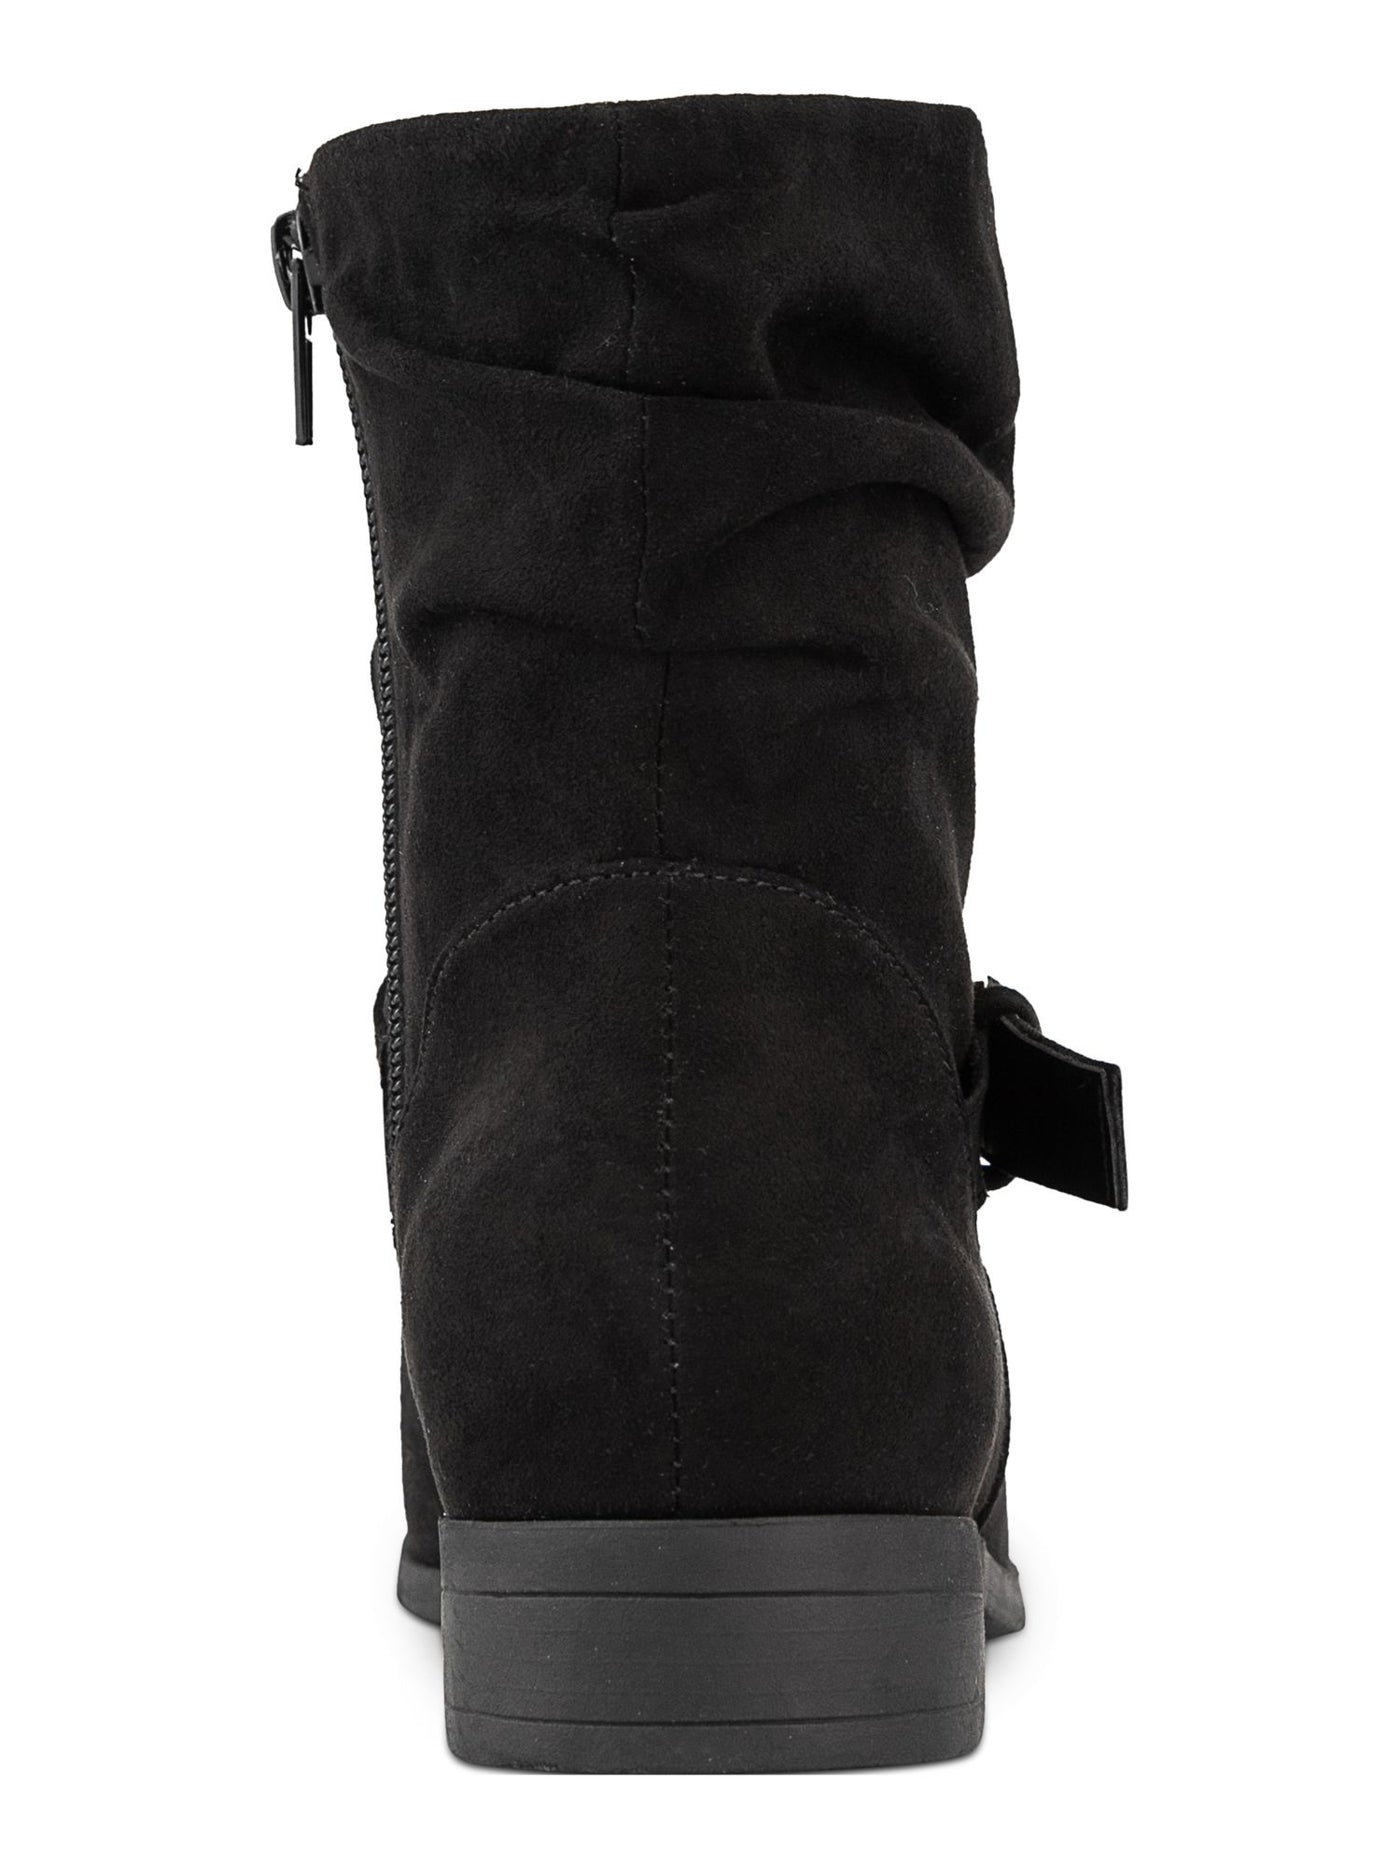 KAREN SCOTT Womens Black Buckle Accent Comfort Clarett Round Toe Block Heel Zip-Up Slouch Boot 11 M